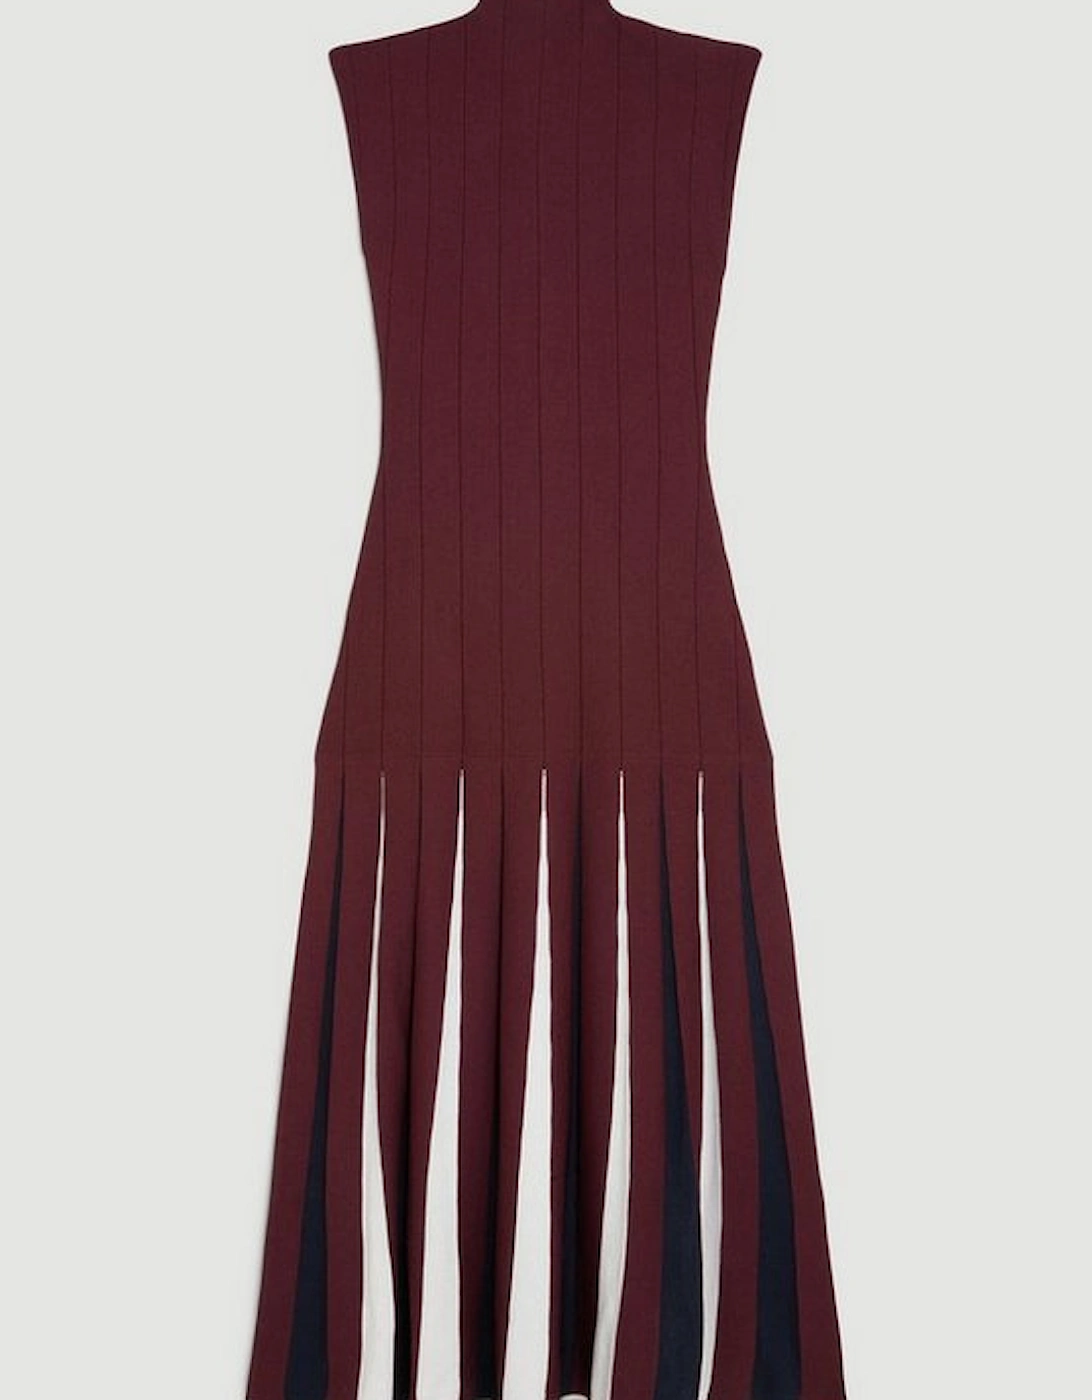 Jacquard Knit Pleated Midaxi Dress